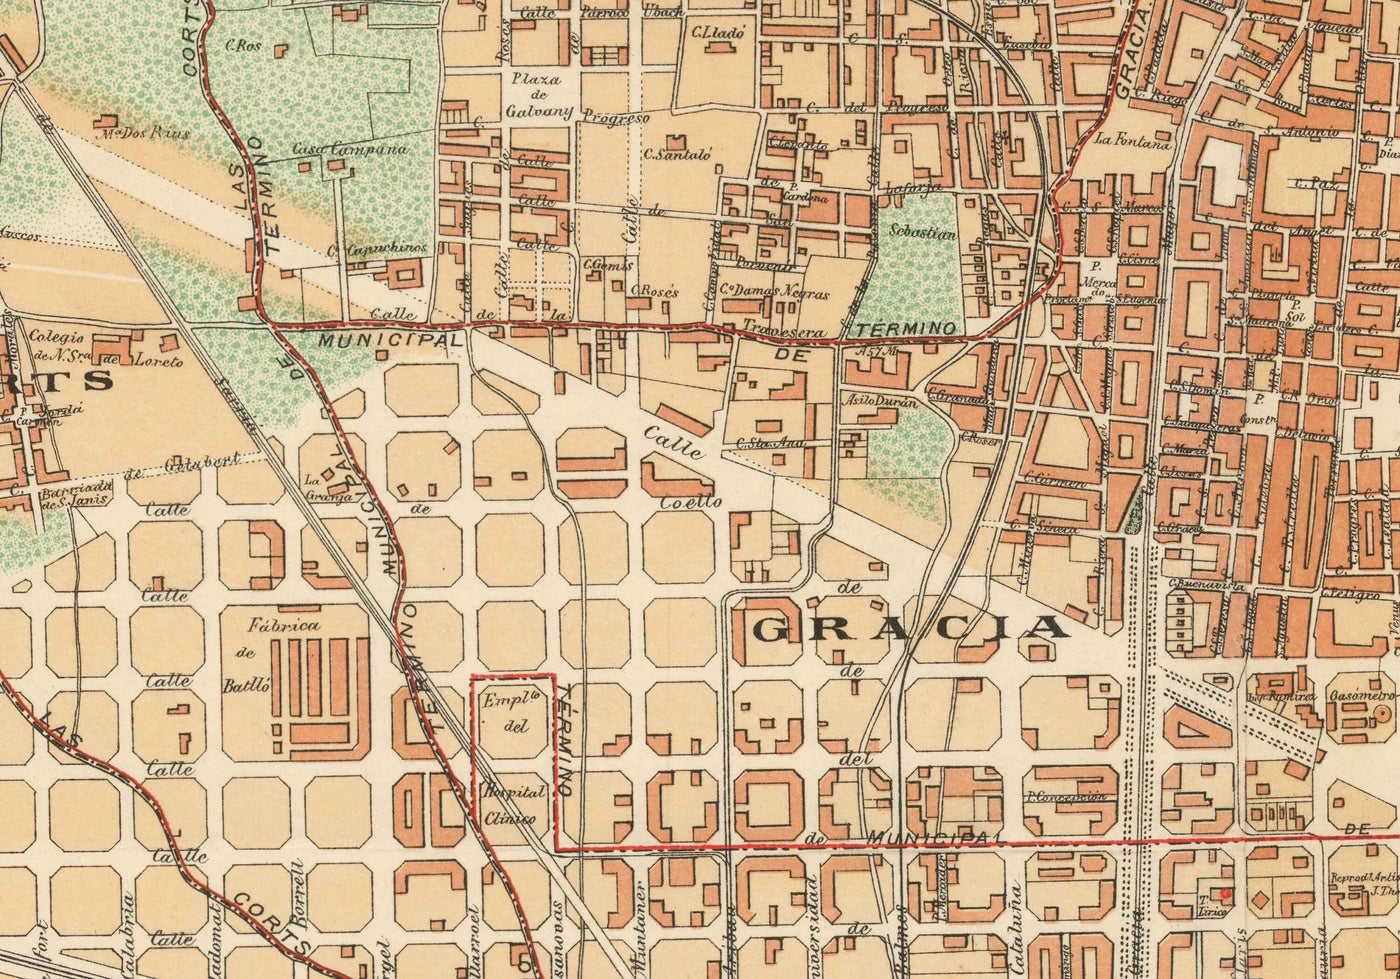 Mapa antiguo de Barcelona, 1891 por DJM Serra - Sagrada Família, Barrio Gótico, Catedrales, Parques, Las Ramblas, Calles